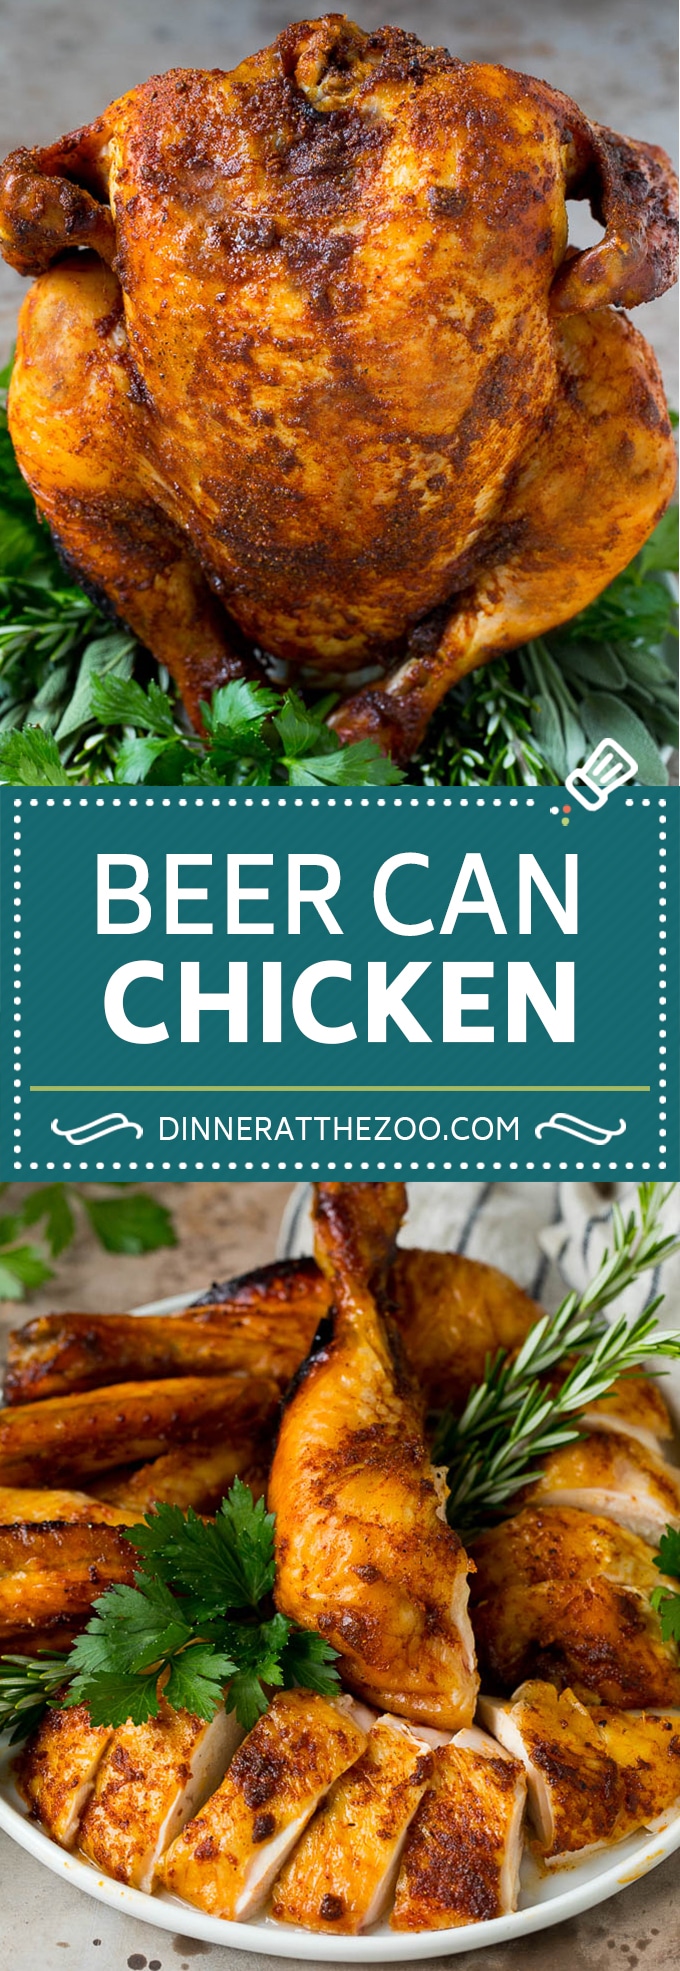 Este pollo en lata de cerveza es un pollo entero recubierto con especias caseras para barbacoa, luego se coloca en una lata de cerveza y se asa a la parrilla a la perfección ahumado y tierno.